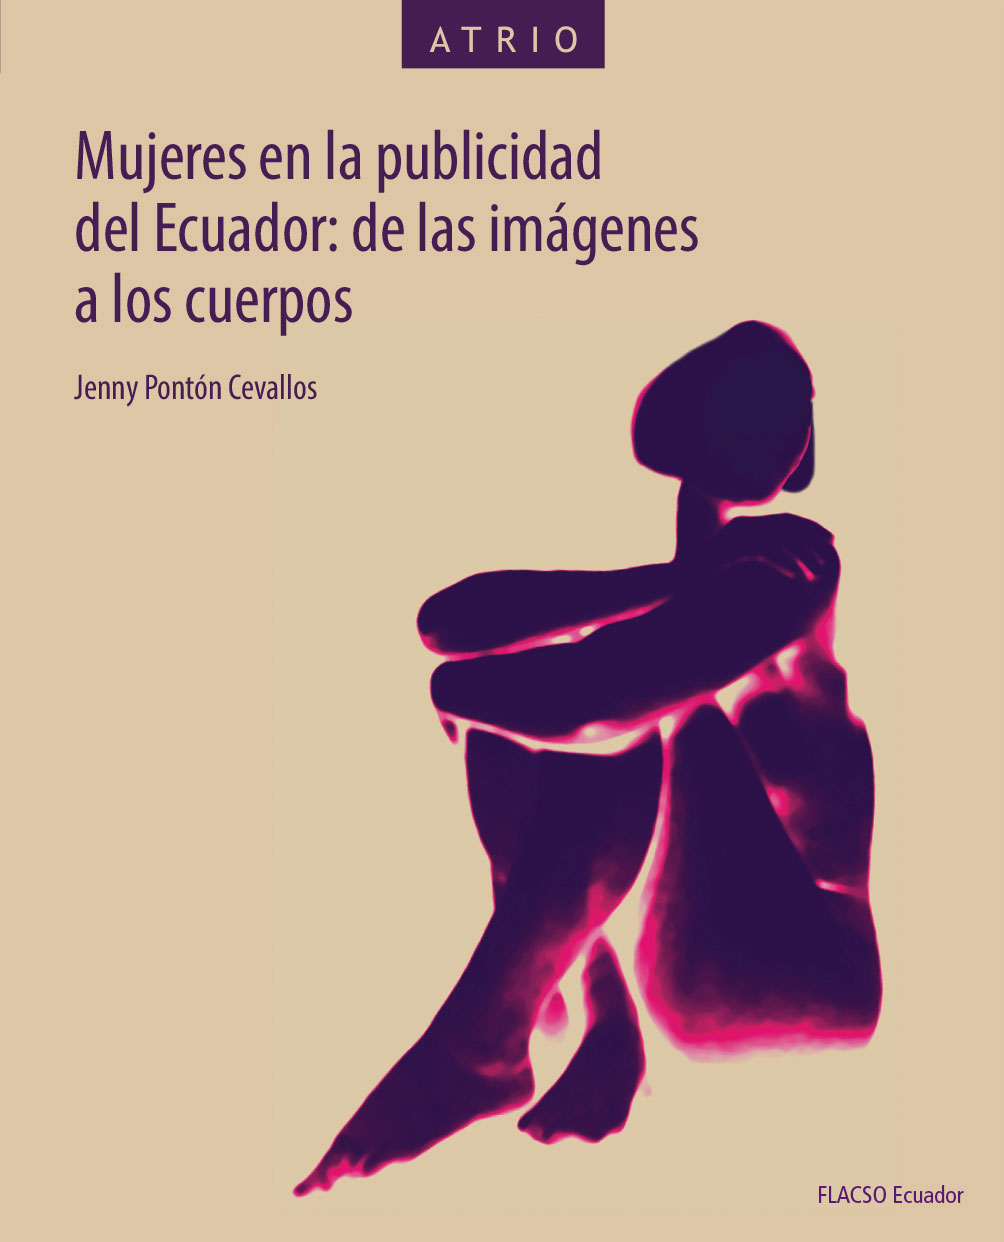 Pontón Cevallos, Jenny <br>Mujeres en la publicidad del Ecuador: de las imágenes a los cuerpos<br/>Quito, Ecuador: FLACSO Ecuador. 2019. xv, 272 páginas 